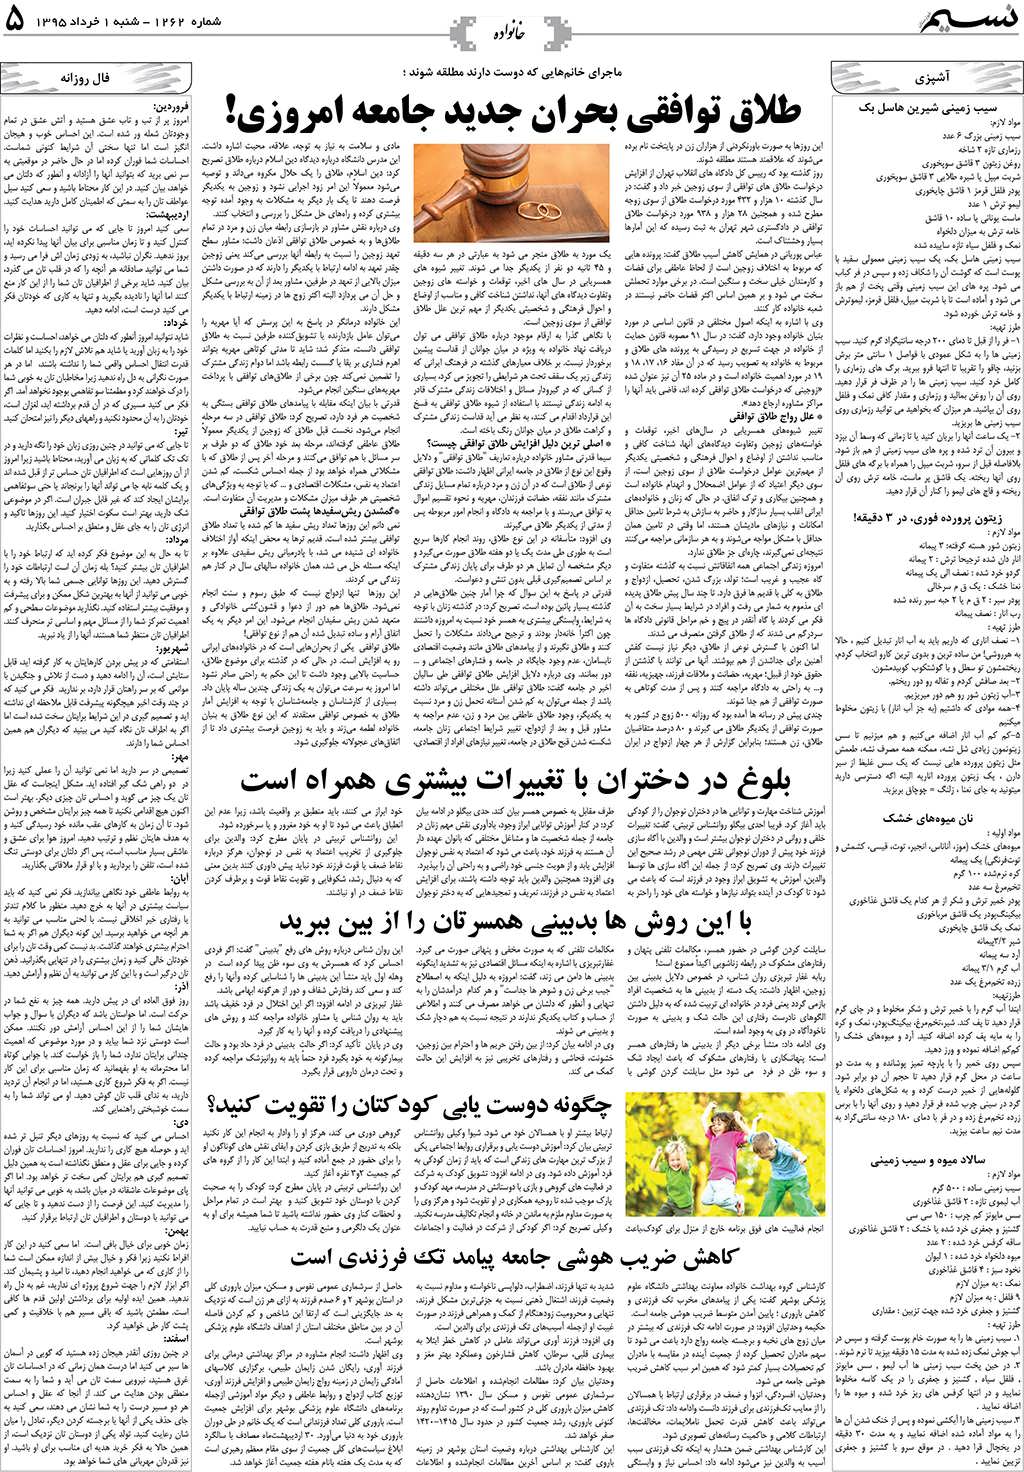 صفحه خانواده روزنامه نسیم شماره 1262